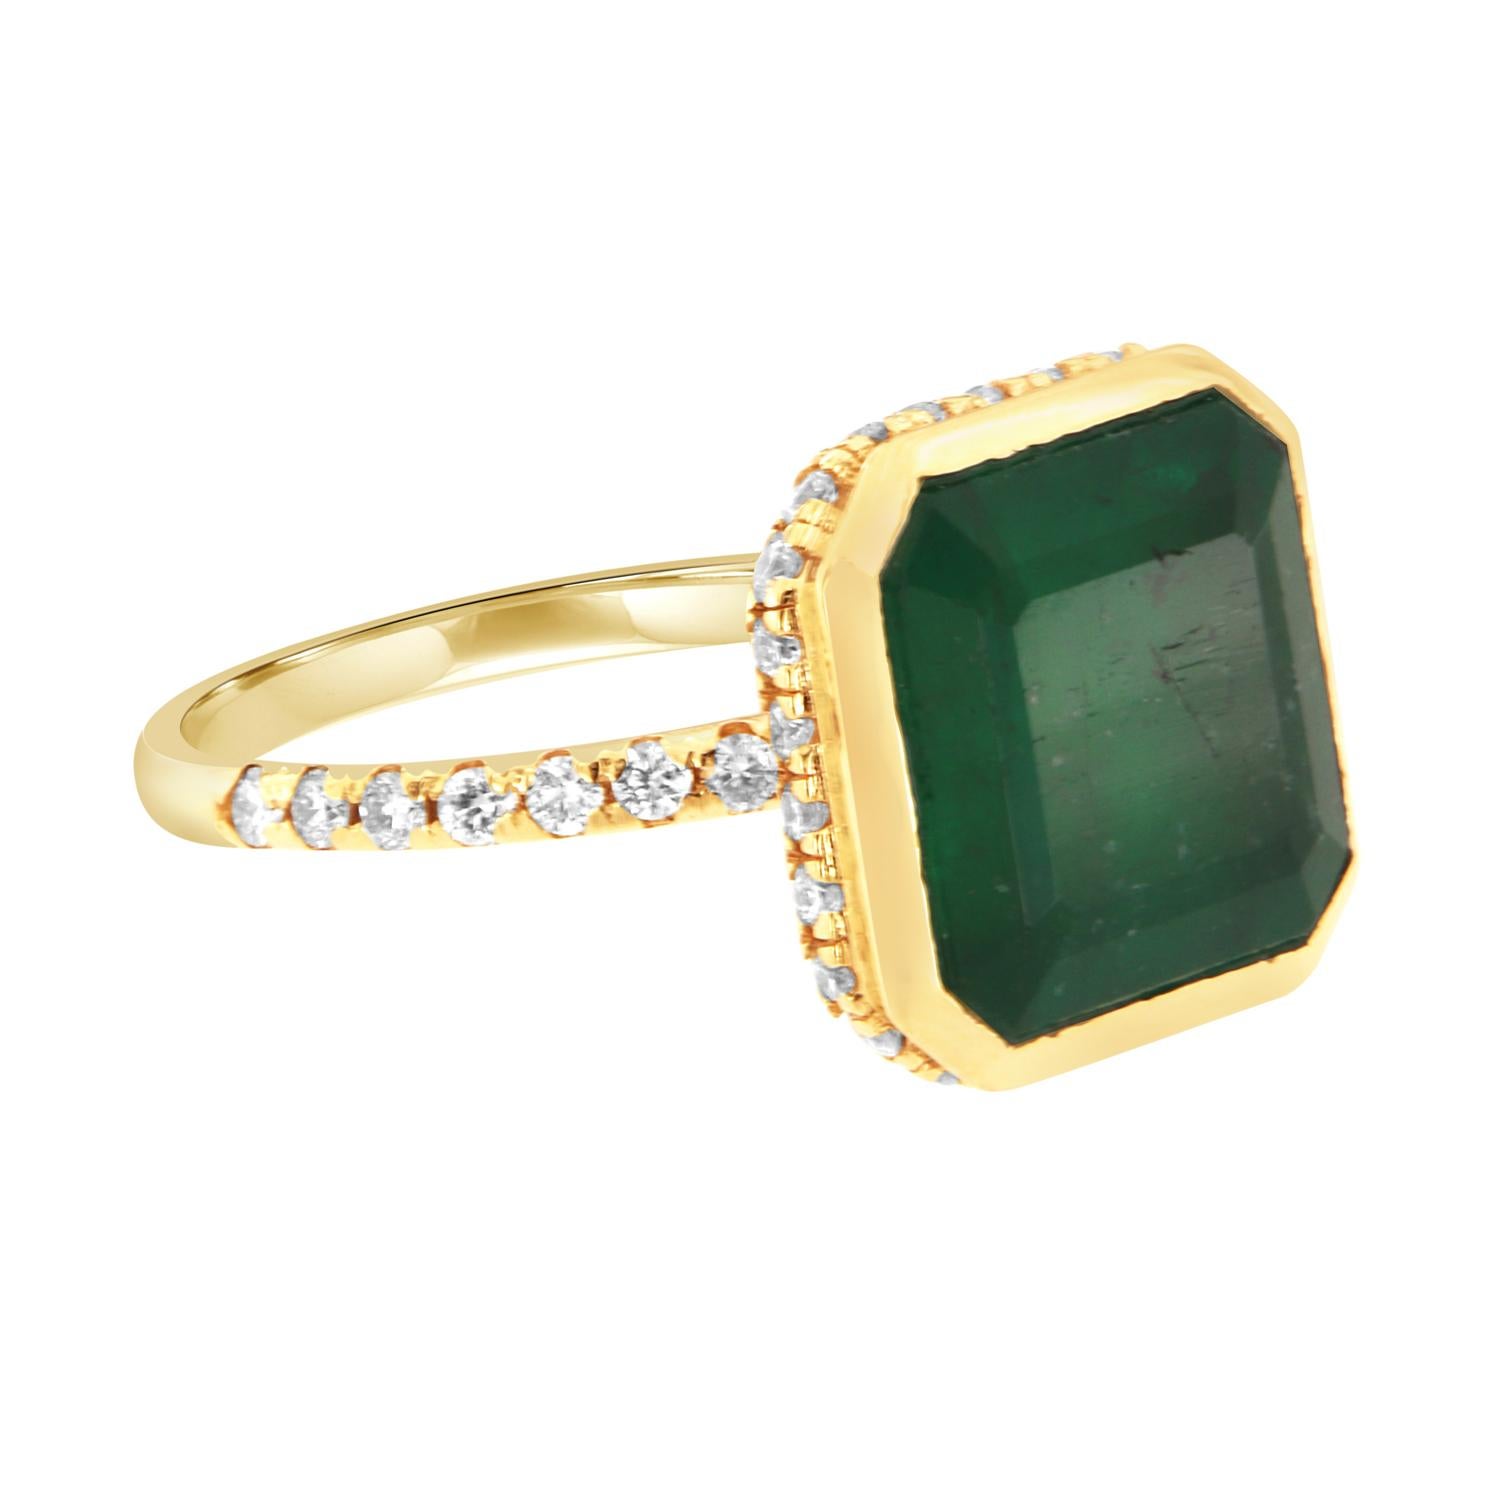 Asscher Cut GIA Certified 6.98 Carat Green Emerald 14k Yellow Gold Hidden Halo Diamond Ring